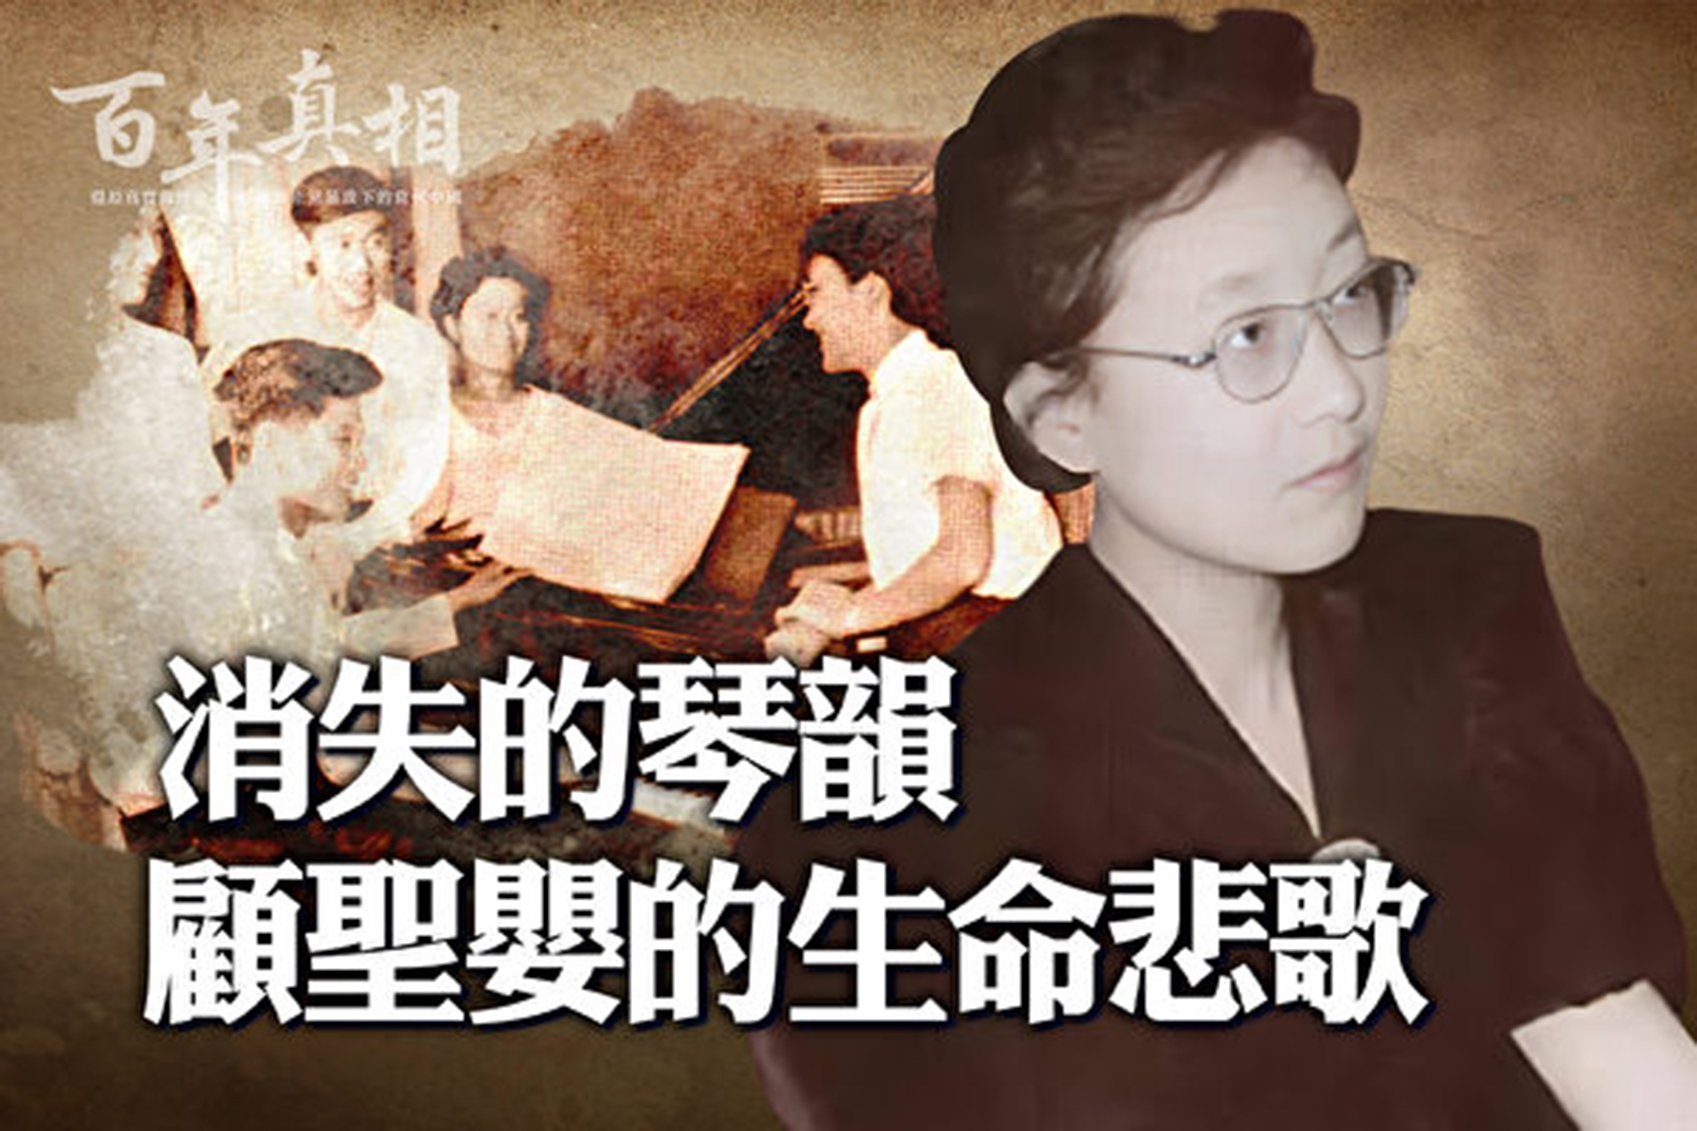 顧聖嬰，上世紀五六十年代「中國鋼琴五聖手」之首，為她的國家爭得無數榮耀。這個音樂天才，在文革初期，選擇了自殺，佳人玉殞，琴韻不再。（《百年真相》提供）